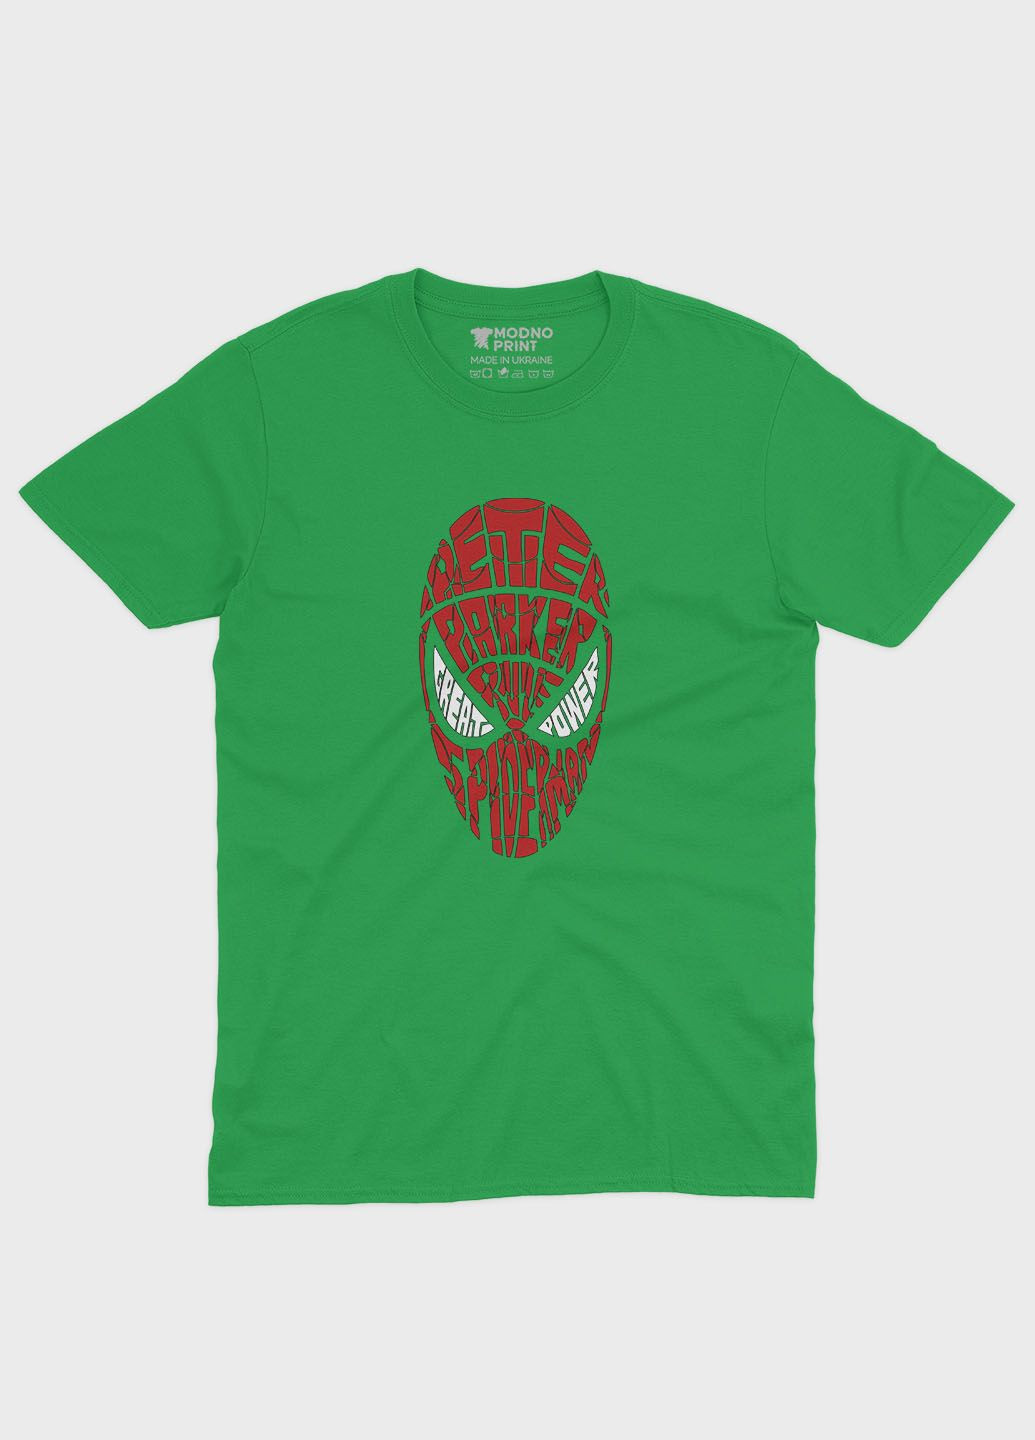 Зелена демісезонна футболка для хлопчика з принтом супергероя - людина-павук (ts001-1-keg-006-014-073-b) Modno